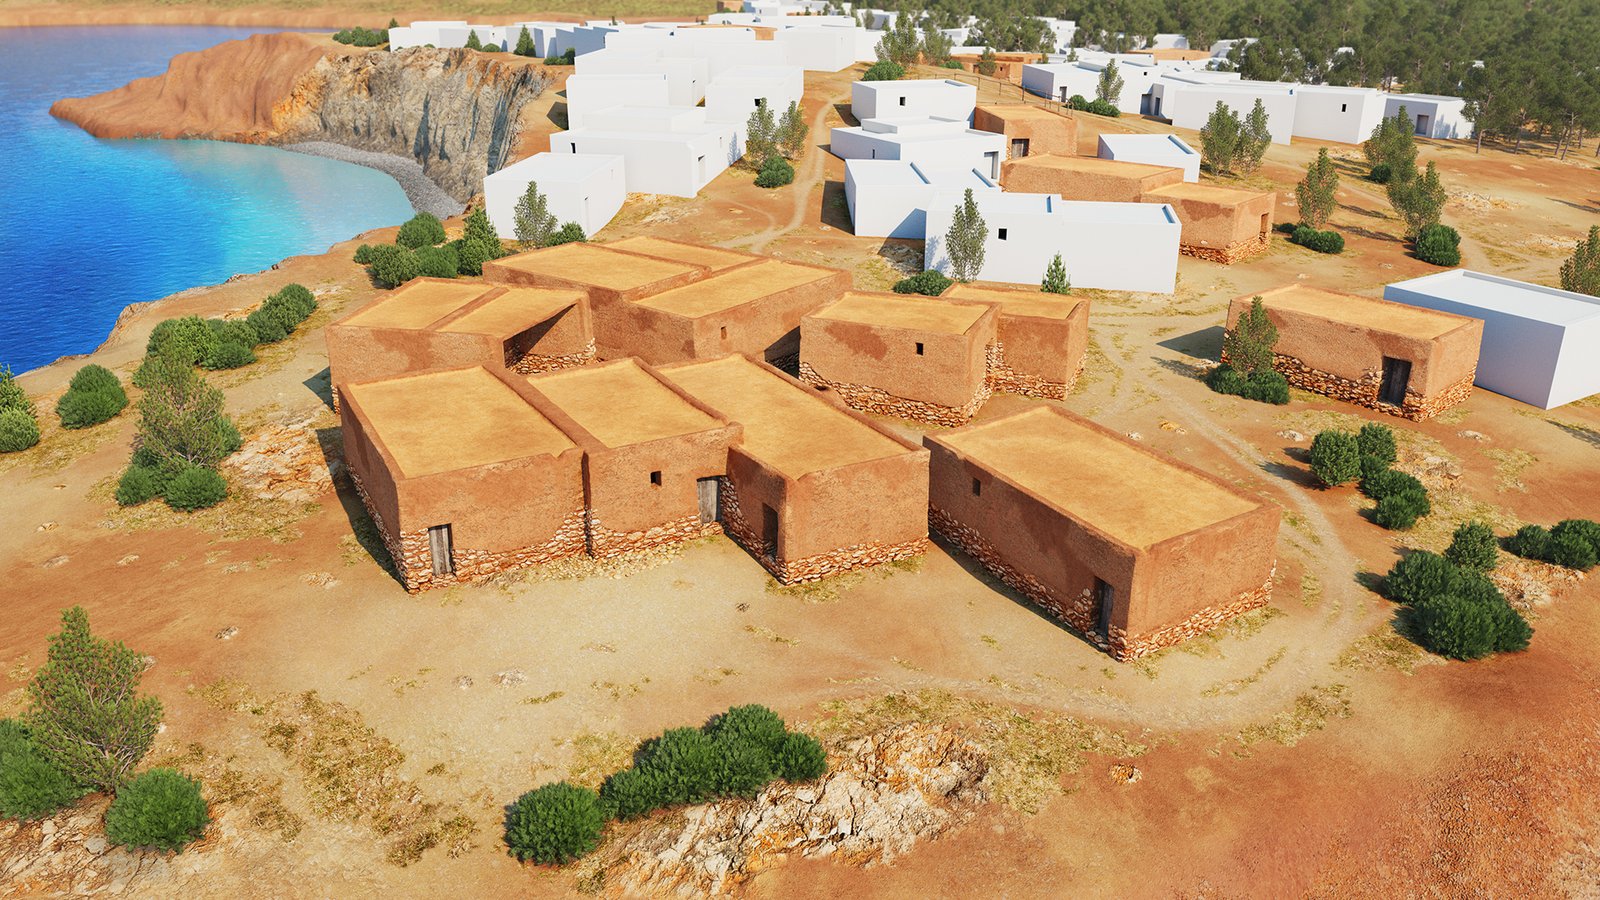 The Phoenician Settlement of Sa Caleta